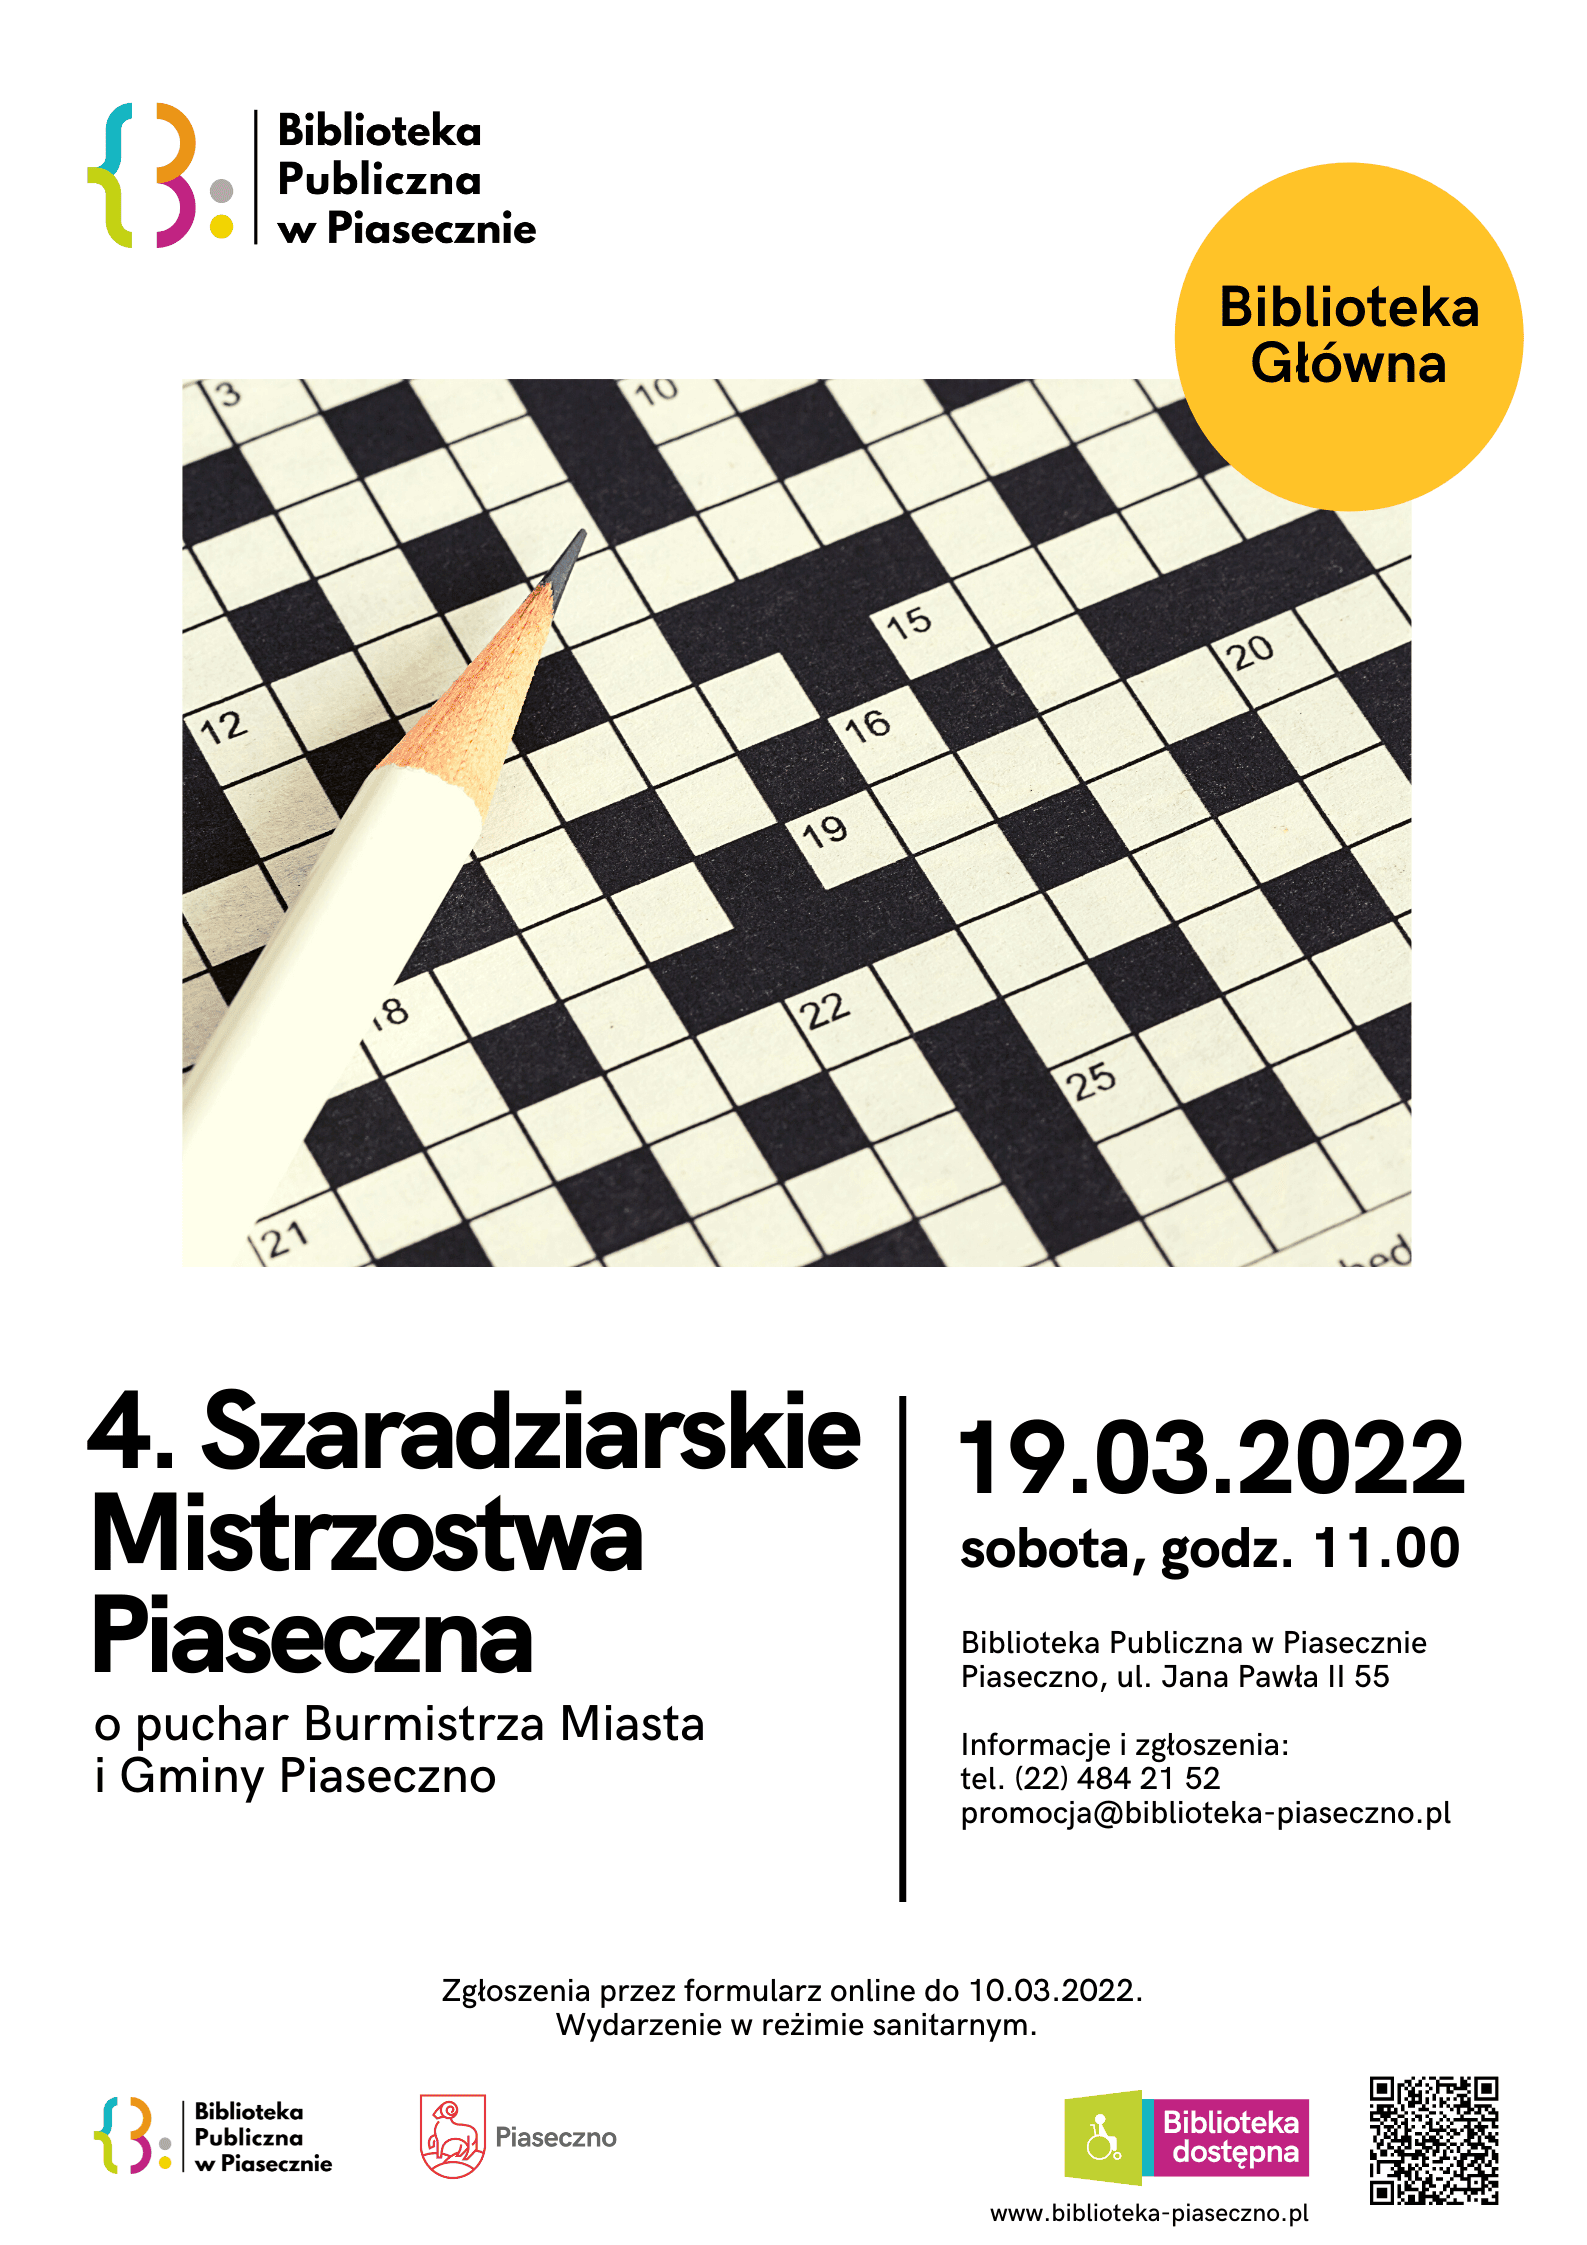 4. Szaradziarskie Mistrzostwa Piaseczna 19.03.2022 -plakat informacyjny ze zdjęciem krzyżówki